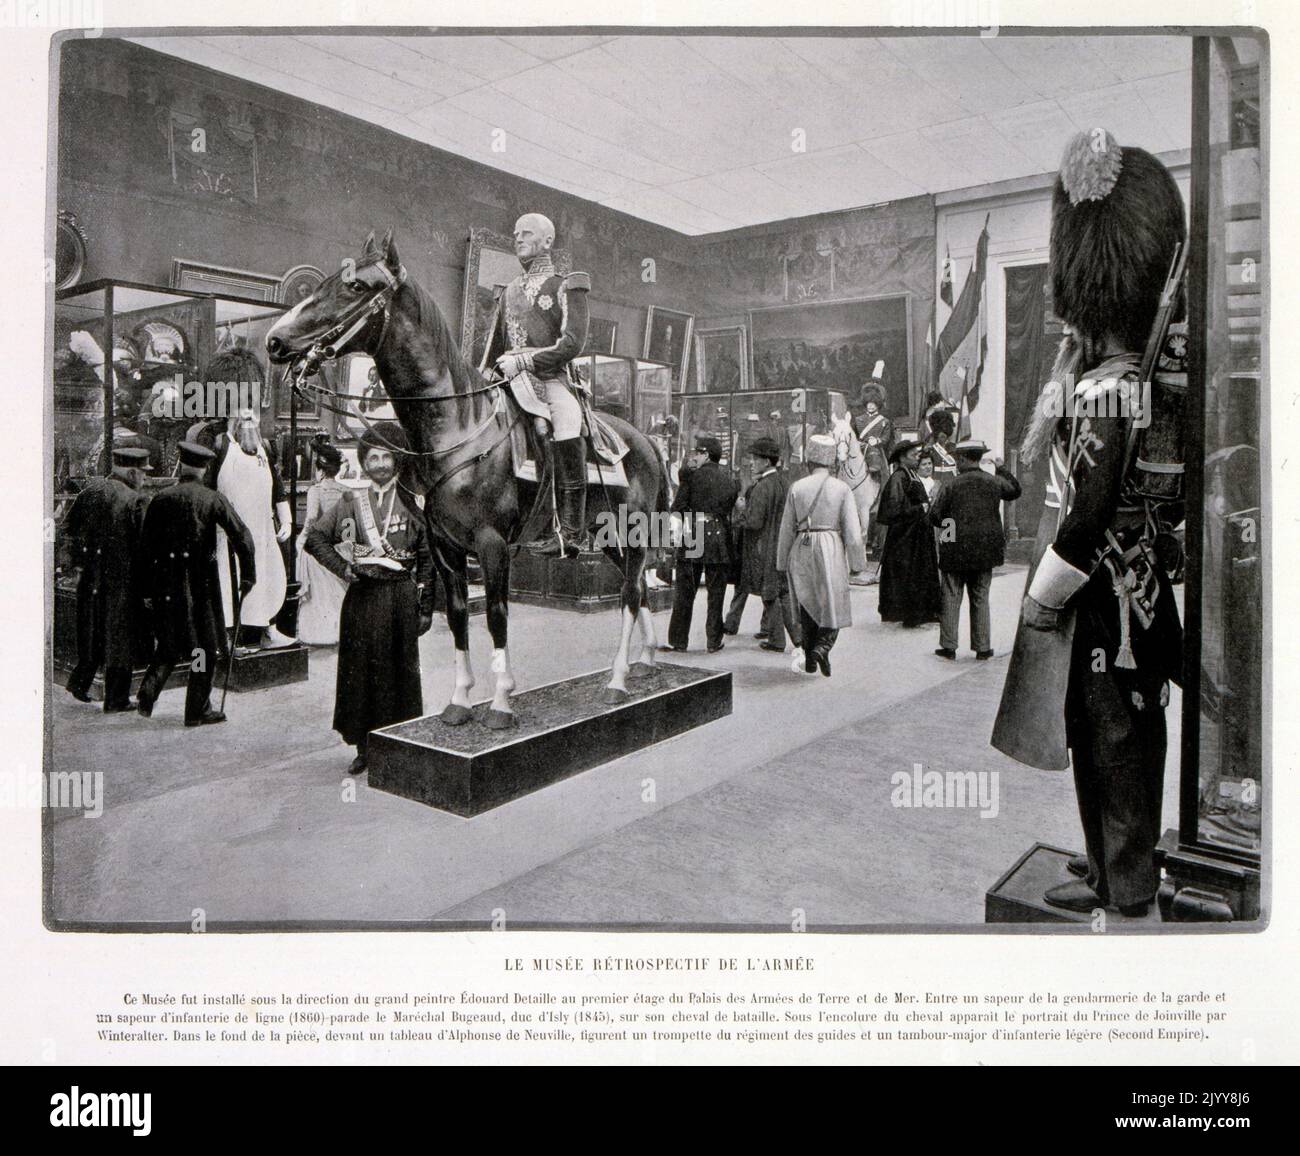 Exposition universelle (Foire mondiale) Paris, 1889; une photographie en noir et blanc du Musée d'Histoire de l'Armée, exposant des mannequins d'hommes à cheval et dans différents types d'uniformes militaires; photo intérieure. Banque D'Images